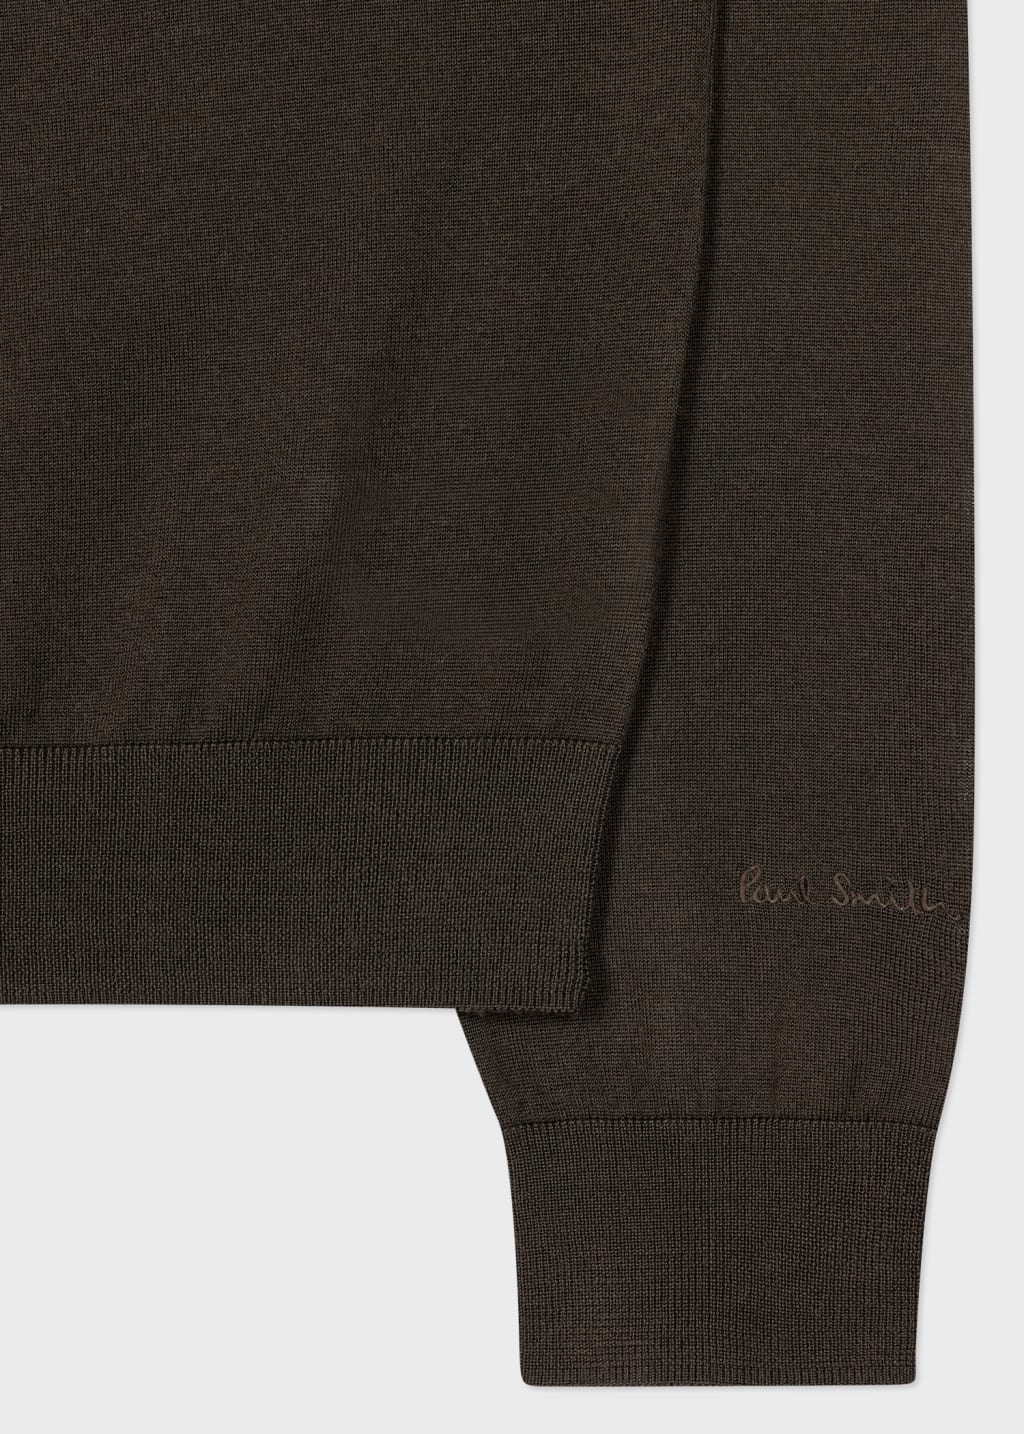 Detail View - Dark Green Merino Wool Half Zip Sweater Paul Smith